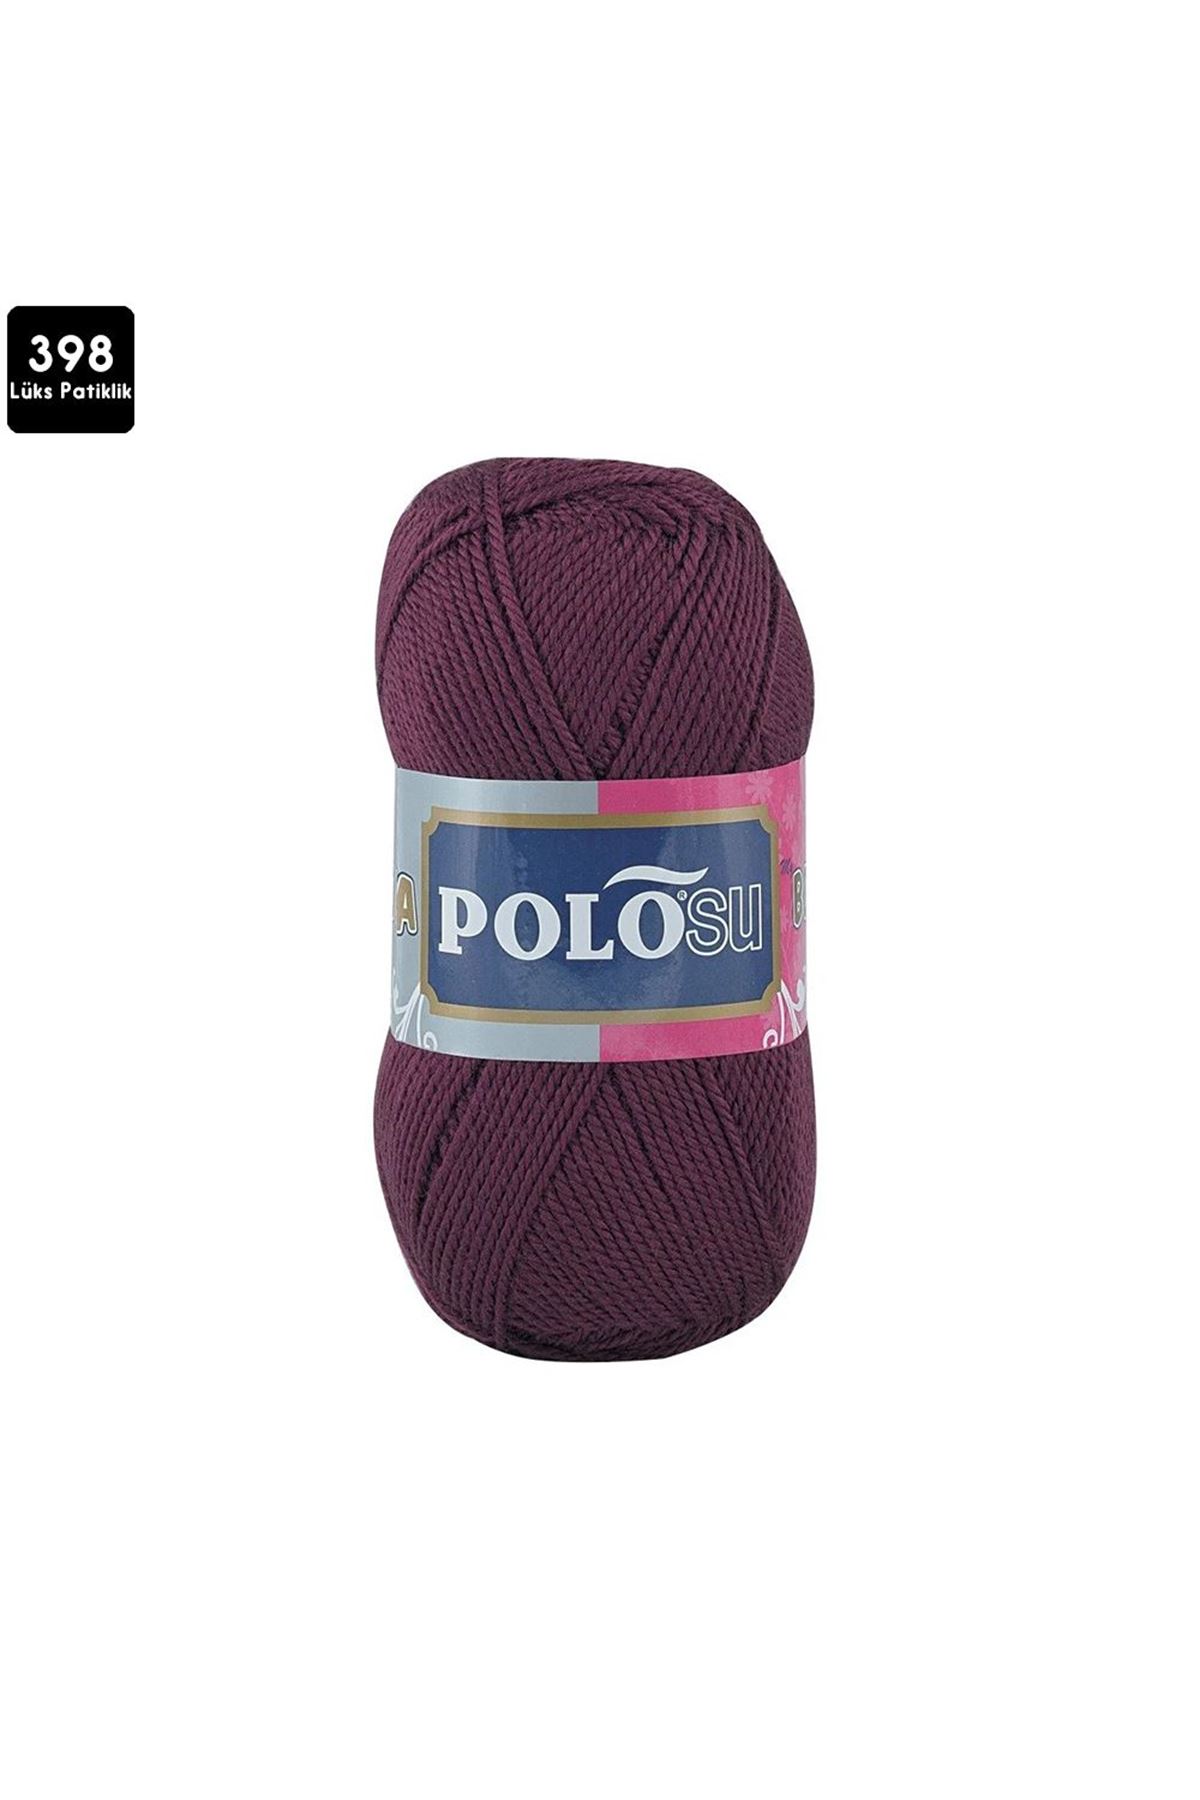 PoloSU Lüks Patiklik Renk No:398